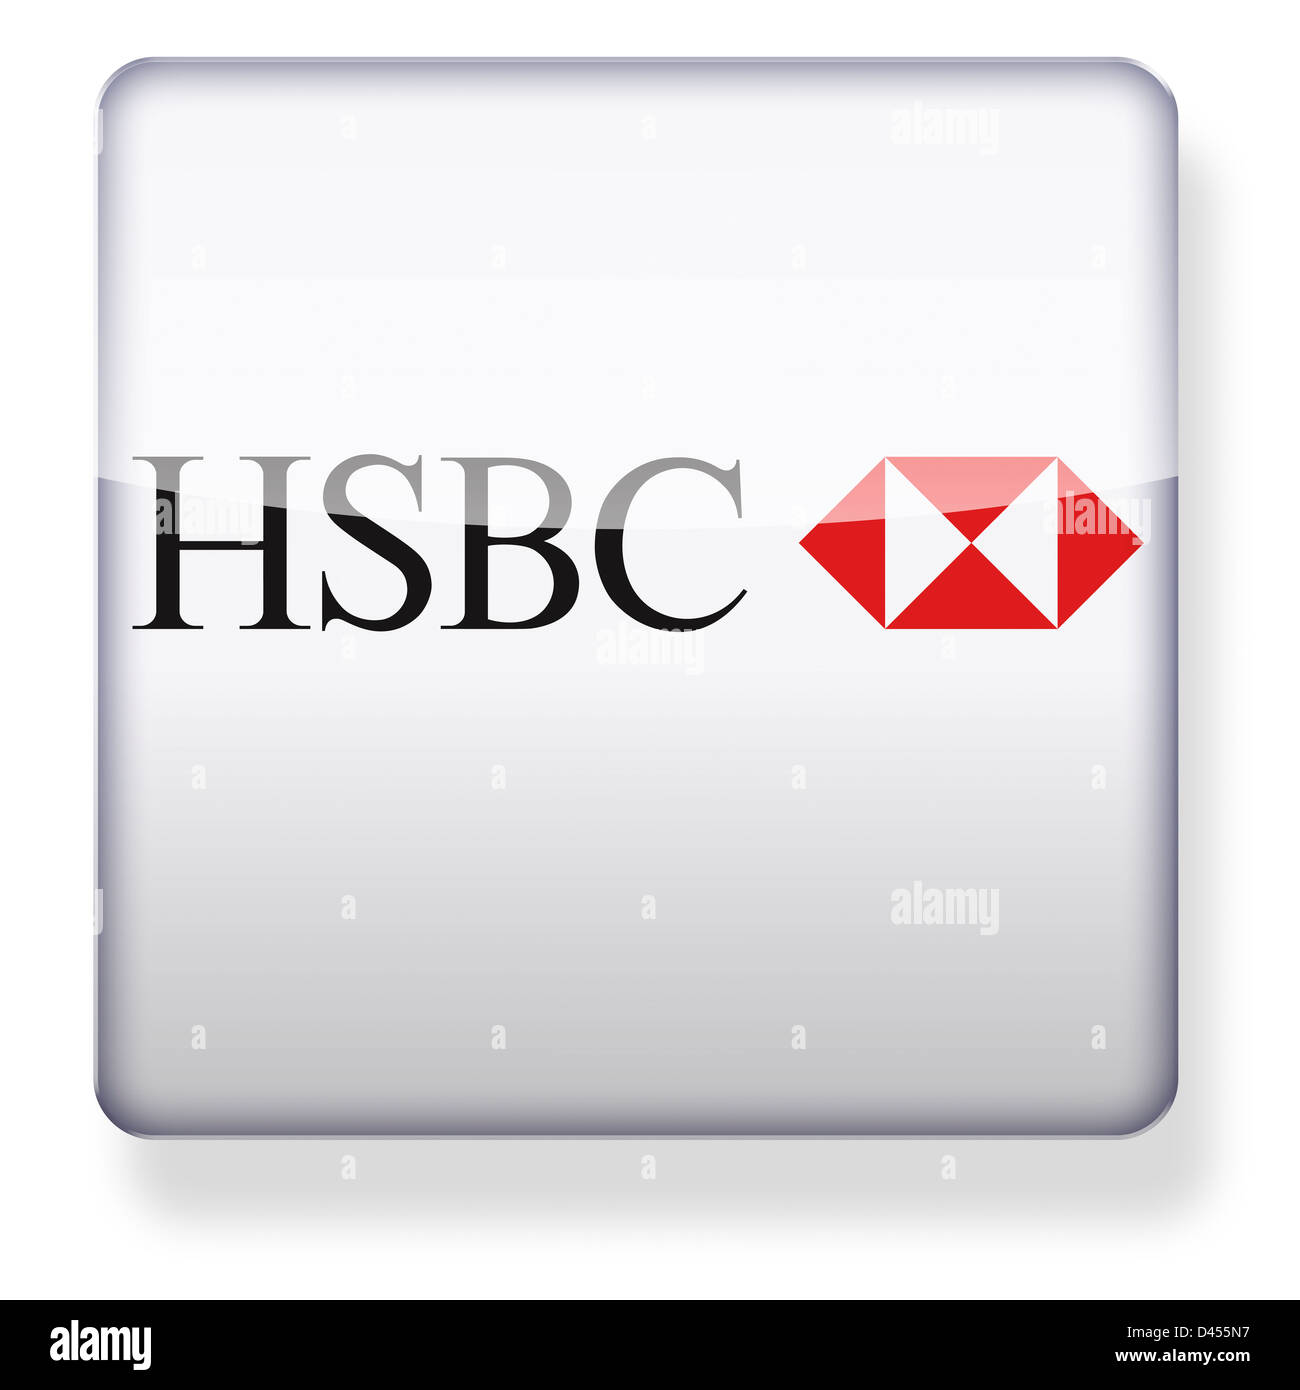 El logotipo de HSBC como el icono de una aplicación. Trazado de recorte incluido. Foto de stock